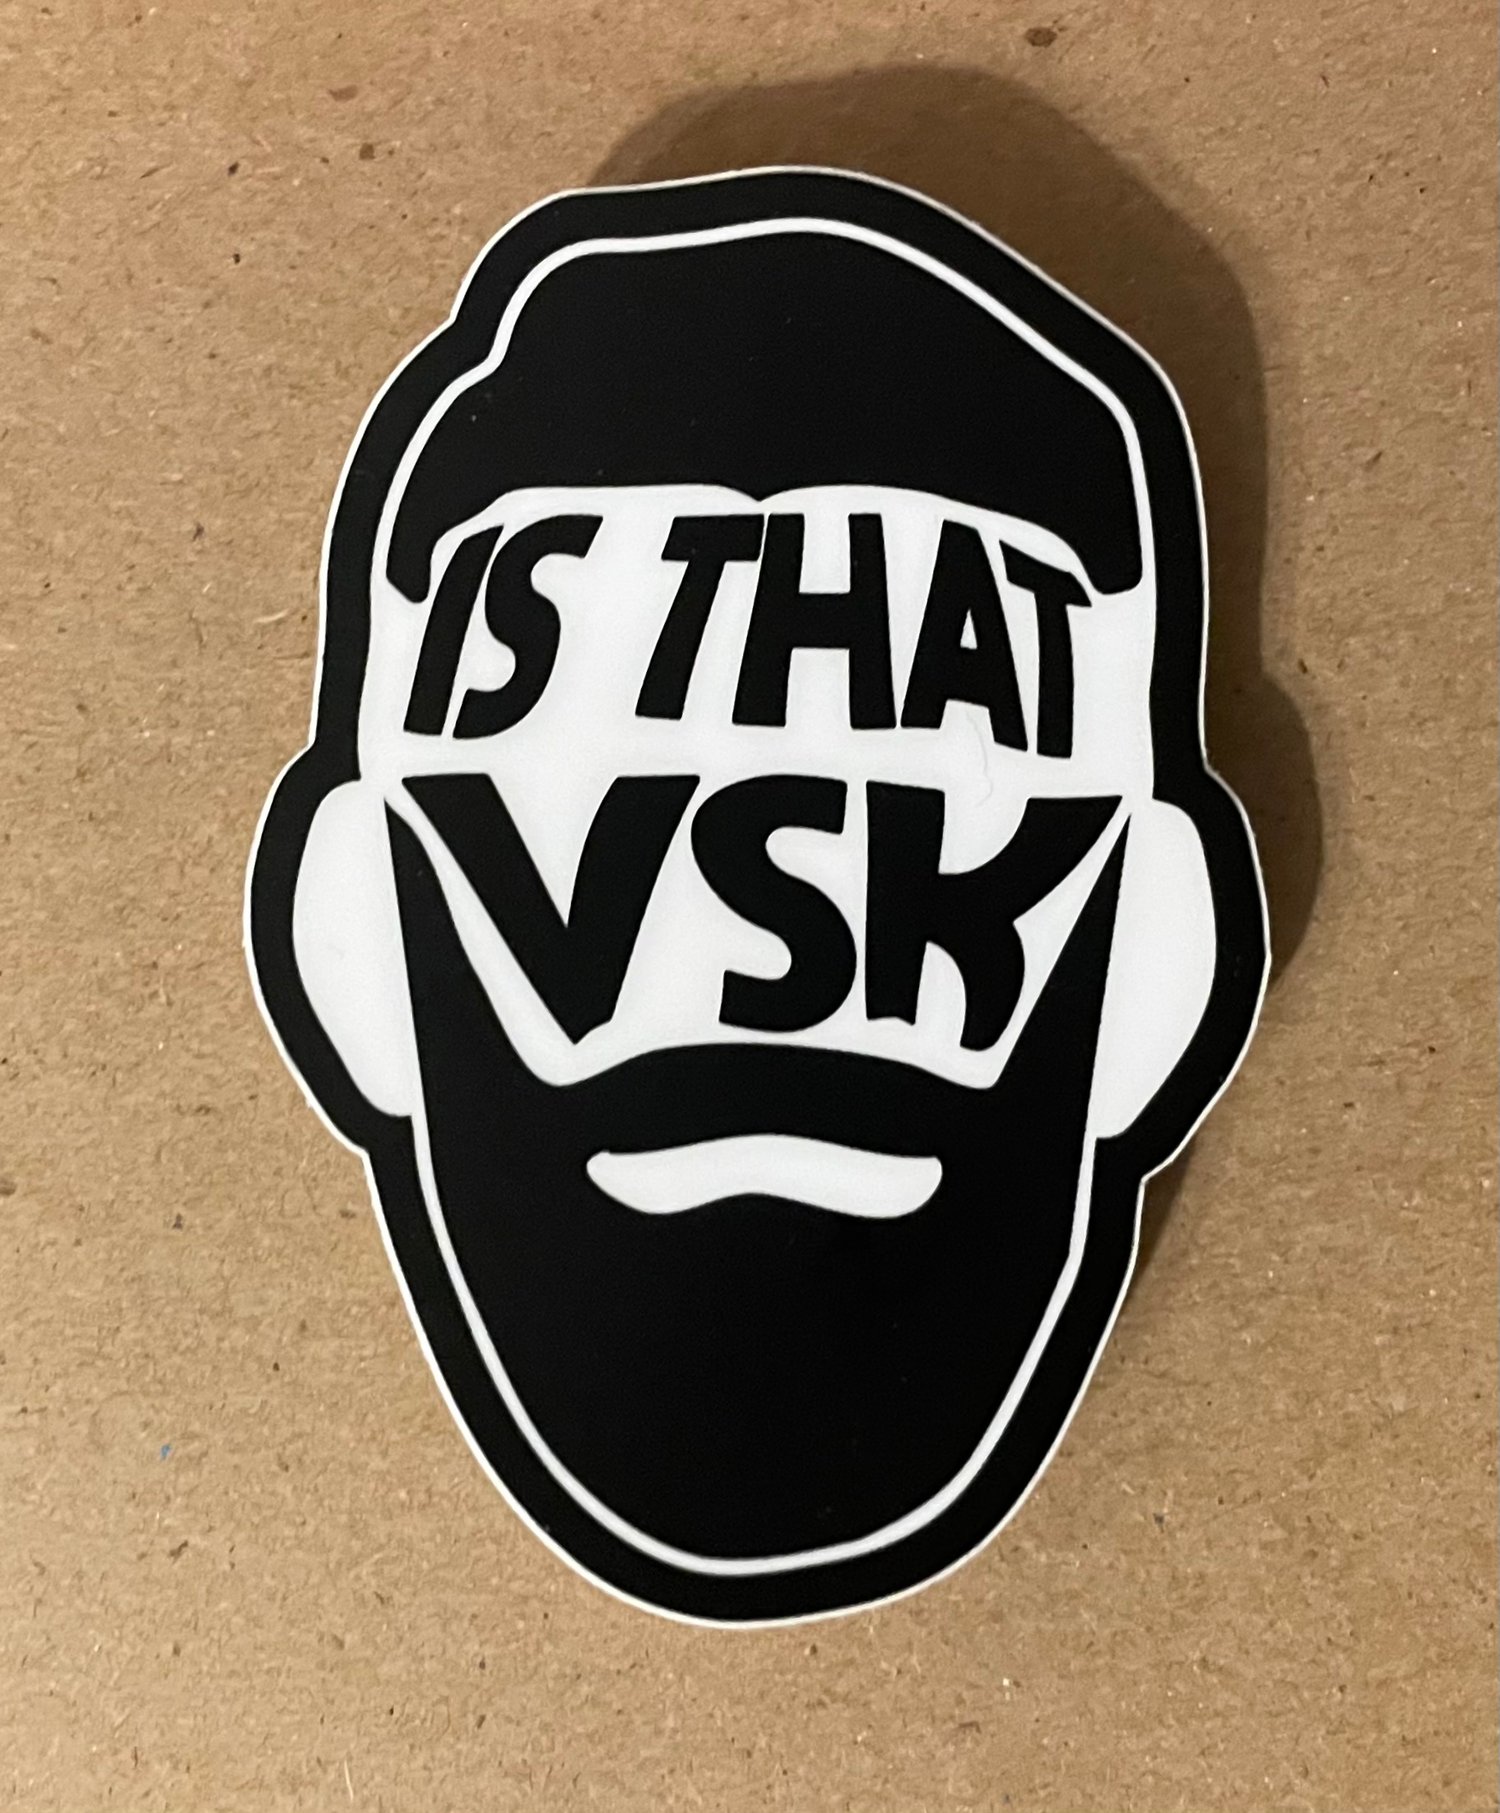 Is that VsK sticker